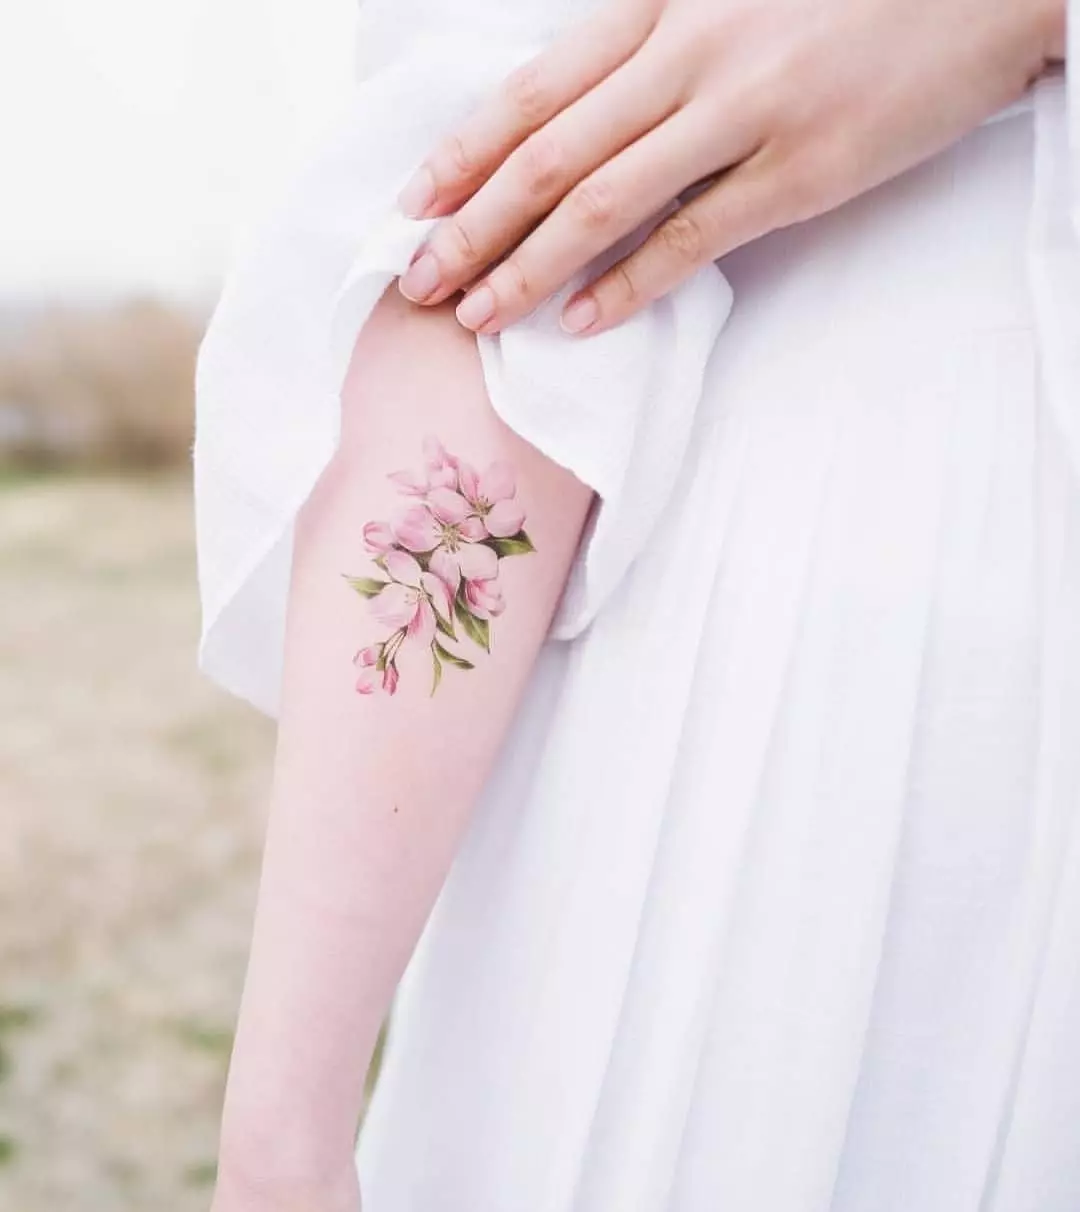 Тендер ТАТТОО: Скице за девојчице. Тетоваже на руци и на раменима, малим и великим. Њежно цвеће и друге женске и софистициране тетоваже 282_2